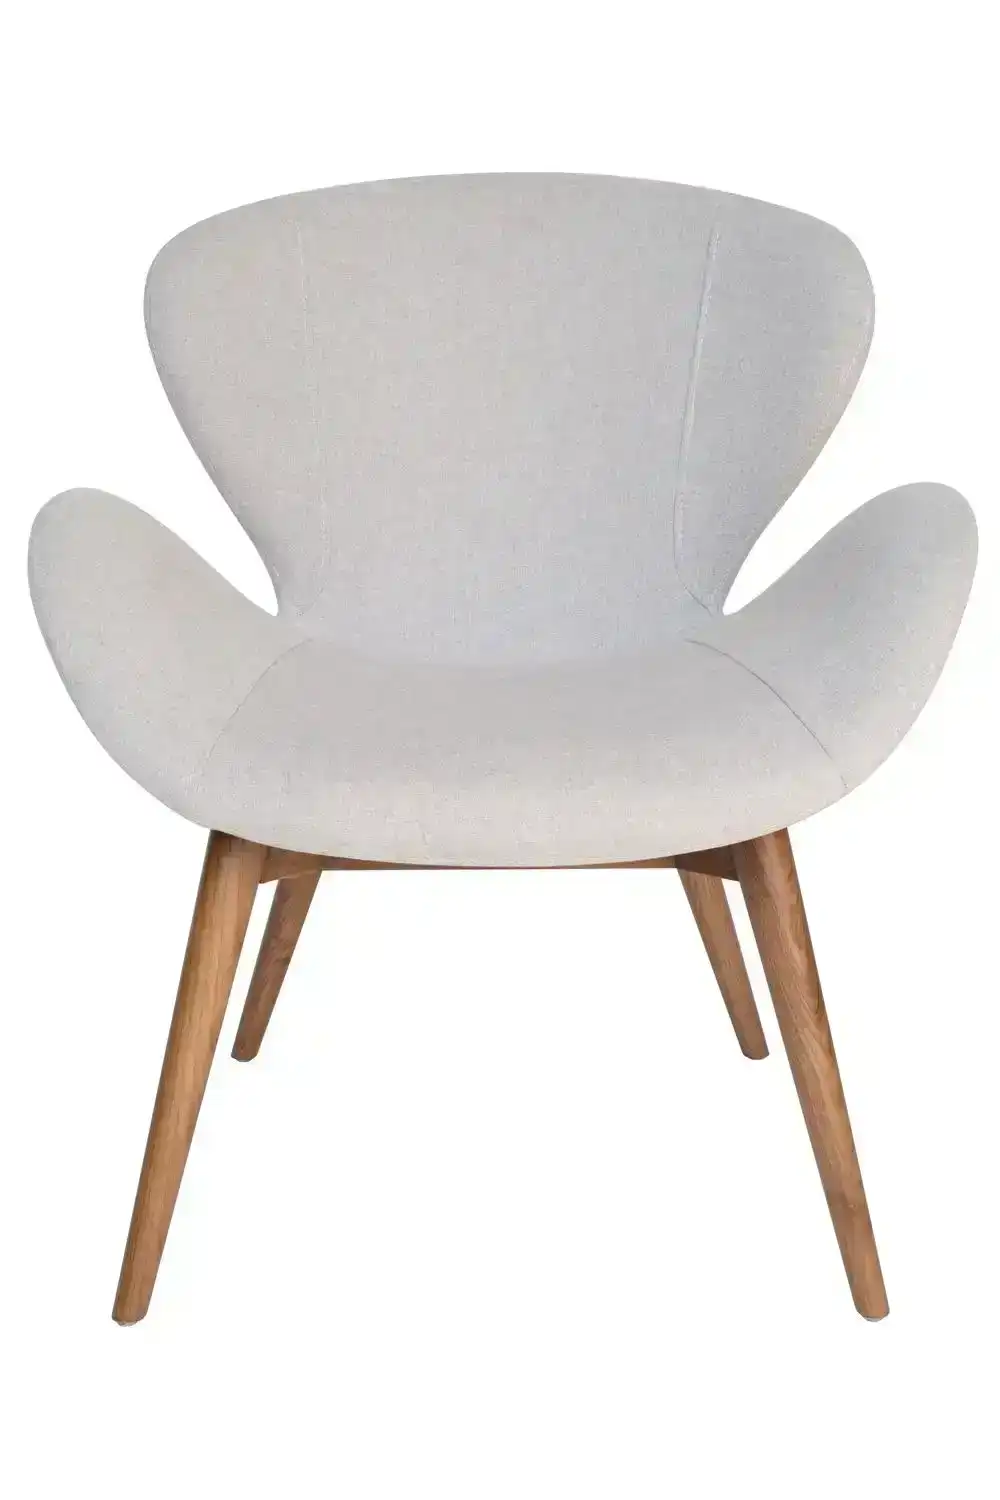 Replica Arne Jacobsen Swan Chair | Walnut Legs